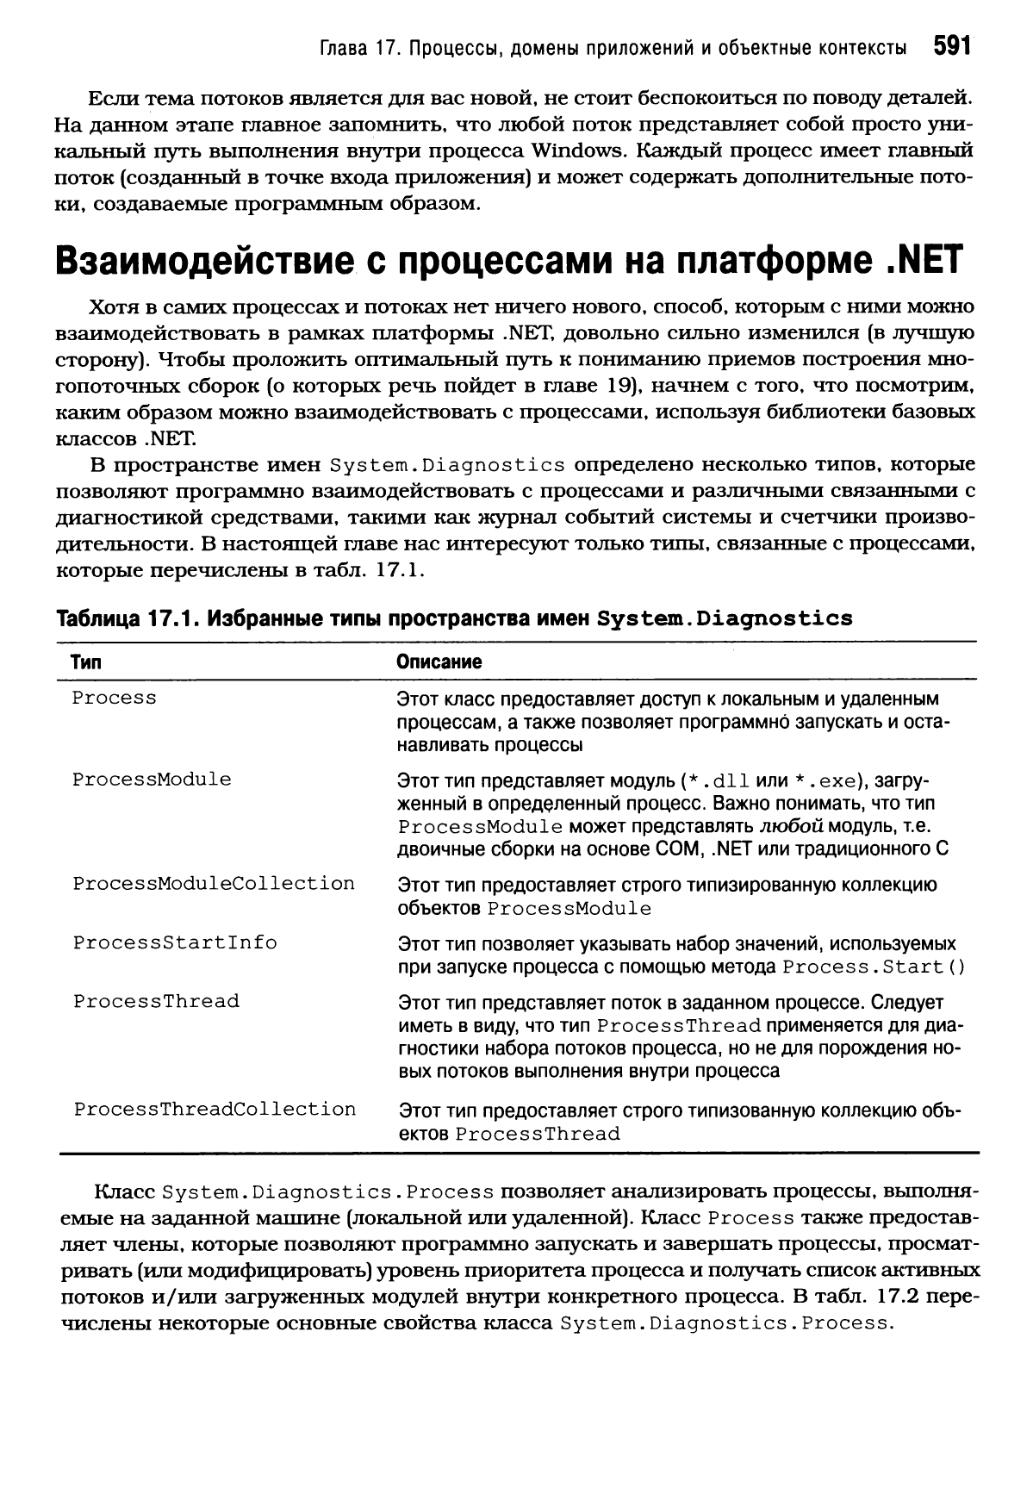 Взаимодействие с процессами на платформе .NET